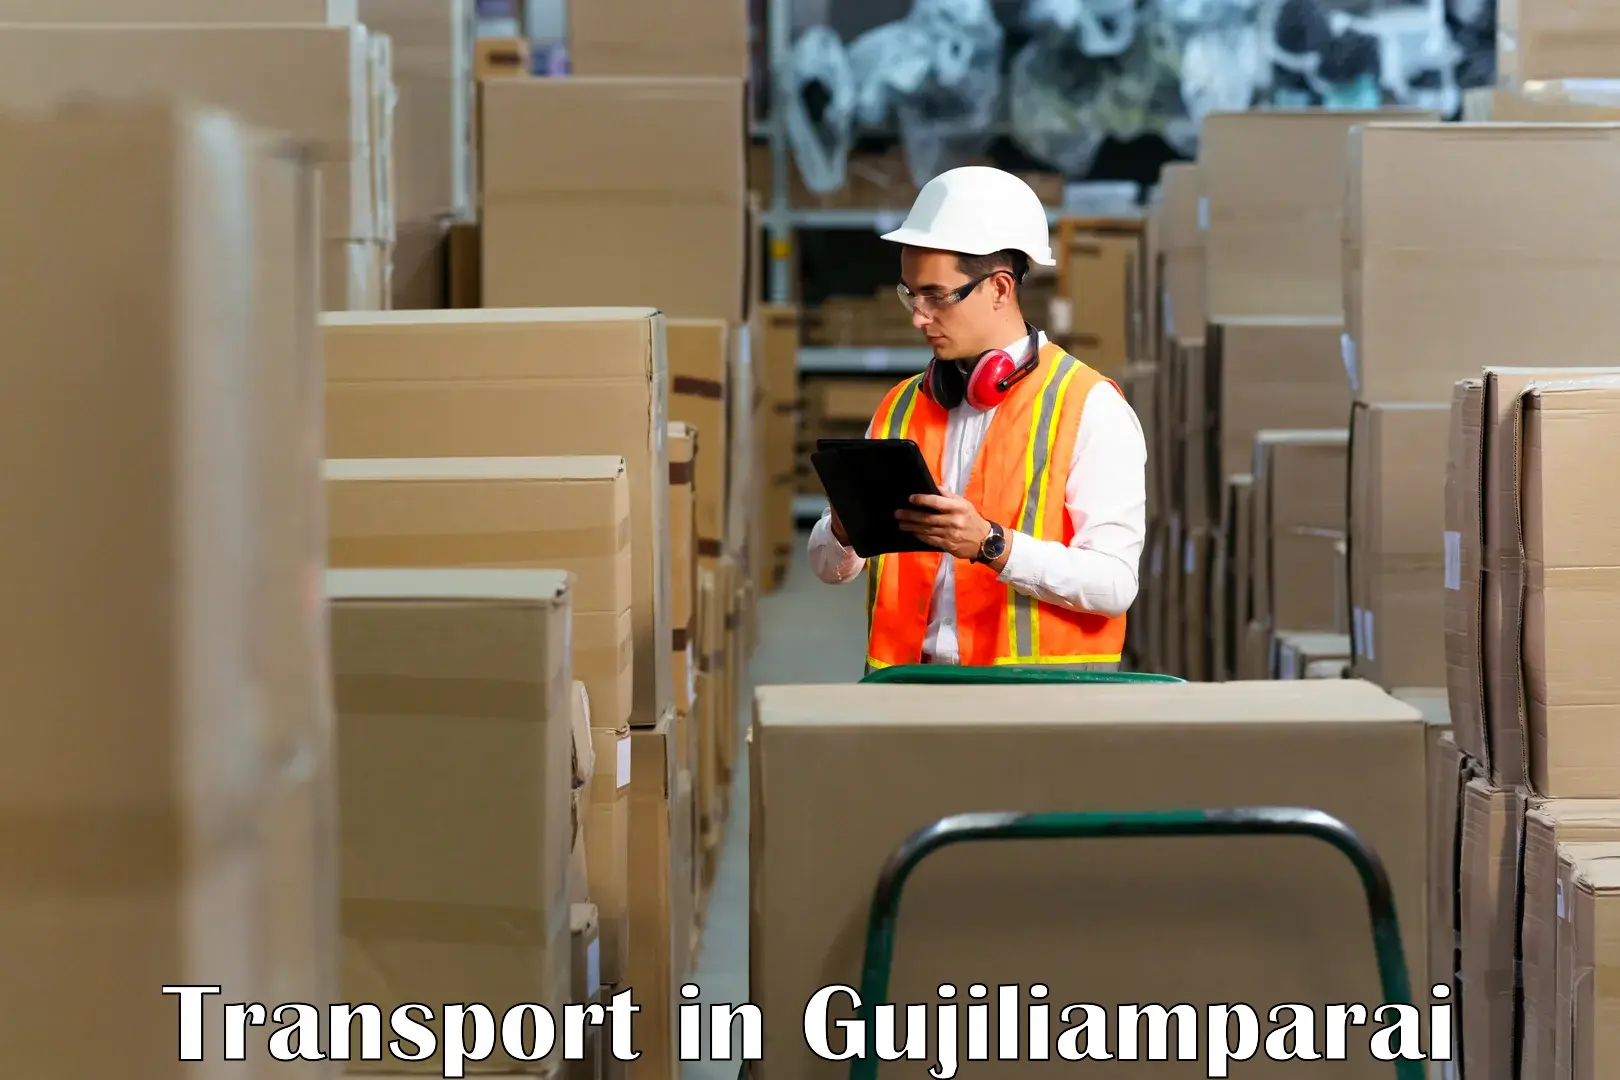 Interstate transport services in Gujiliamparai